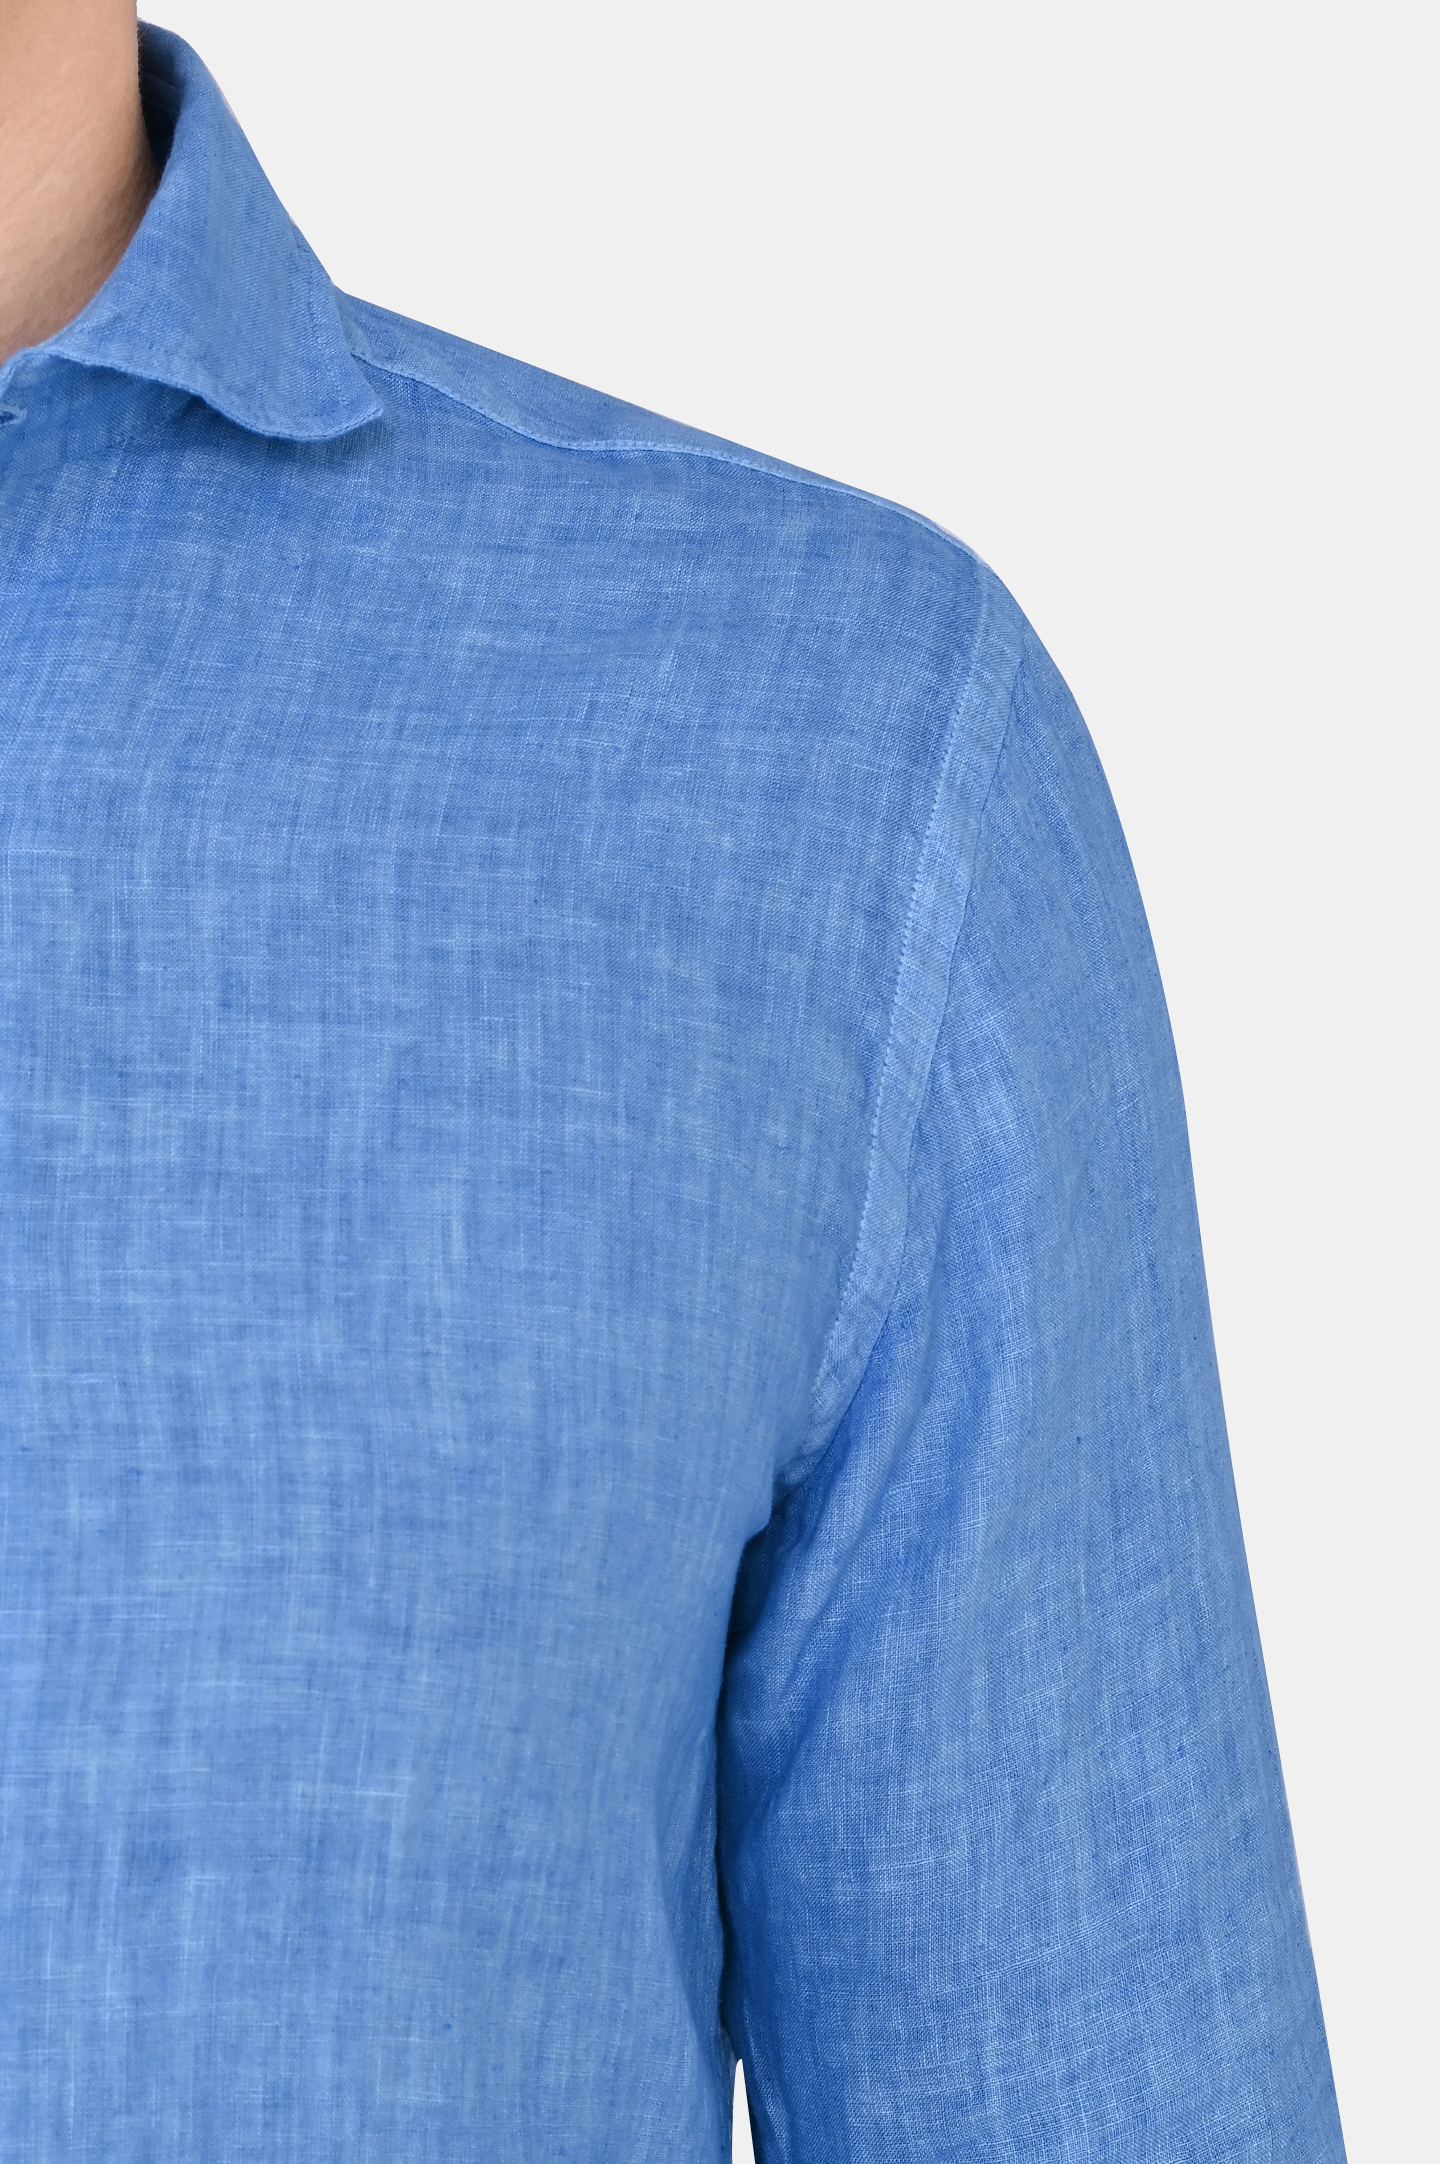 Рубашка CANALI GM02128 L756, цвет: Голубой, Мужской